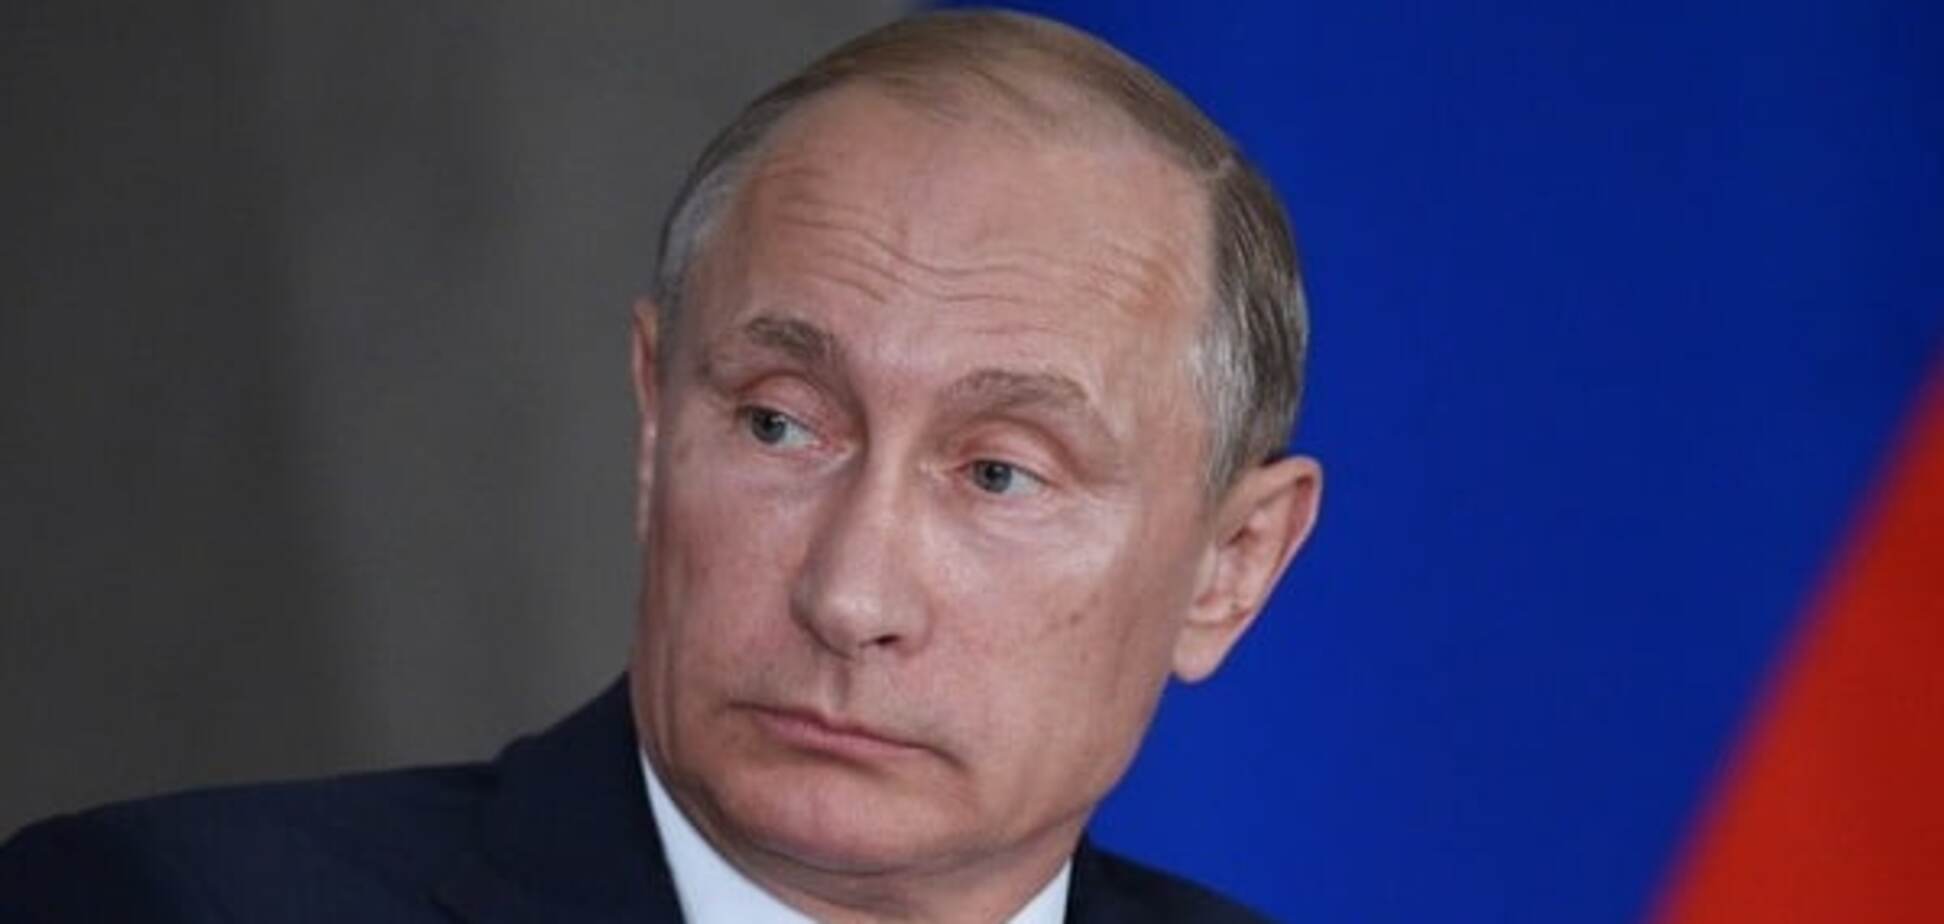 'Траты минимальны': фонд Путина спустил за год более 455 млн рублей — расследование